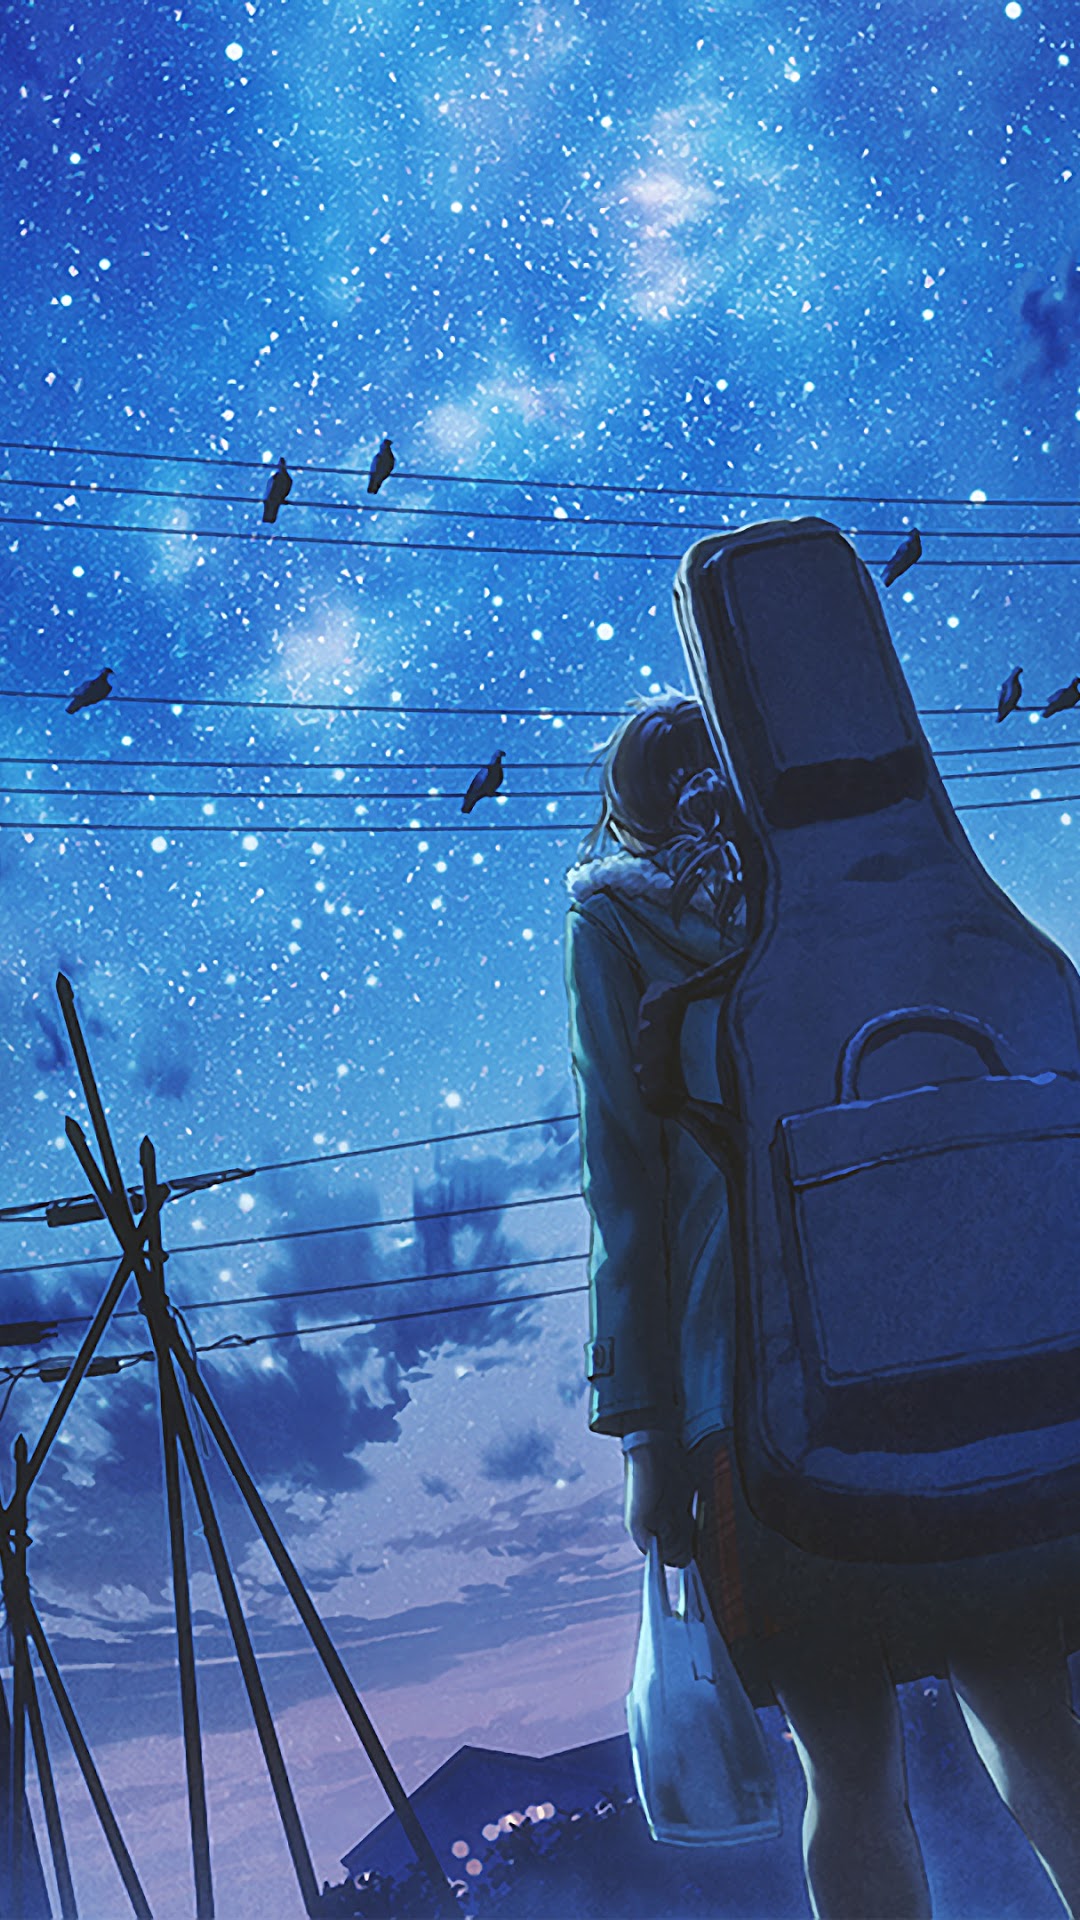 Anime Girl Sky Wallpapers